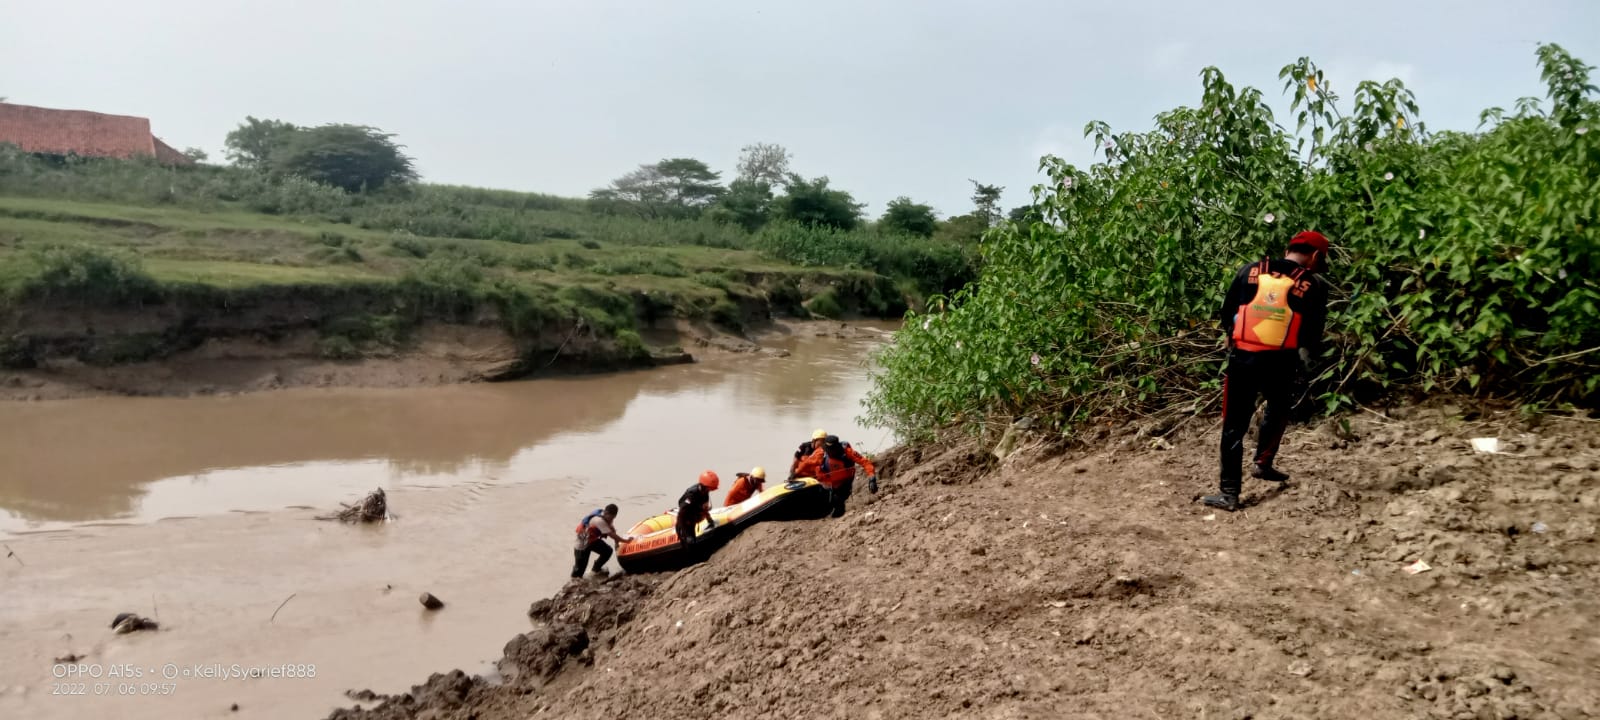 Pencarian Anak Tenggelam di Sungai Cimanis Masih Nihil